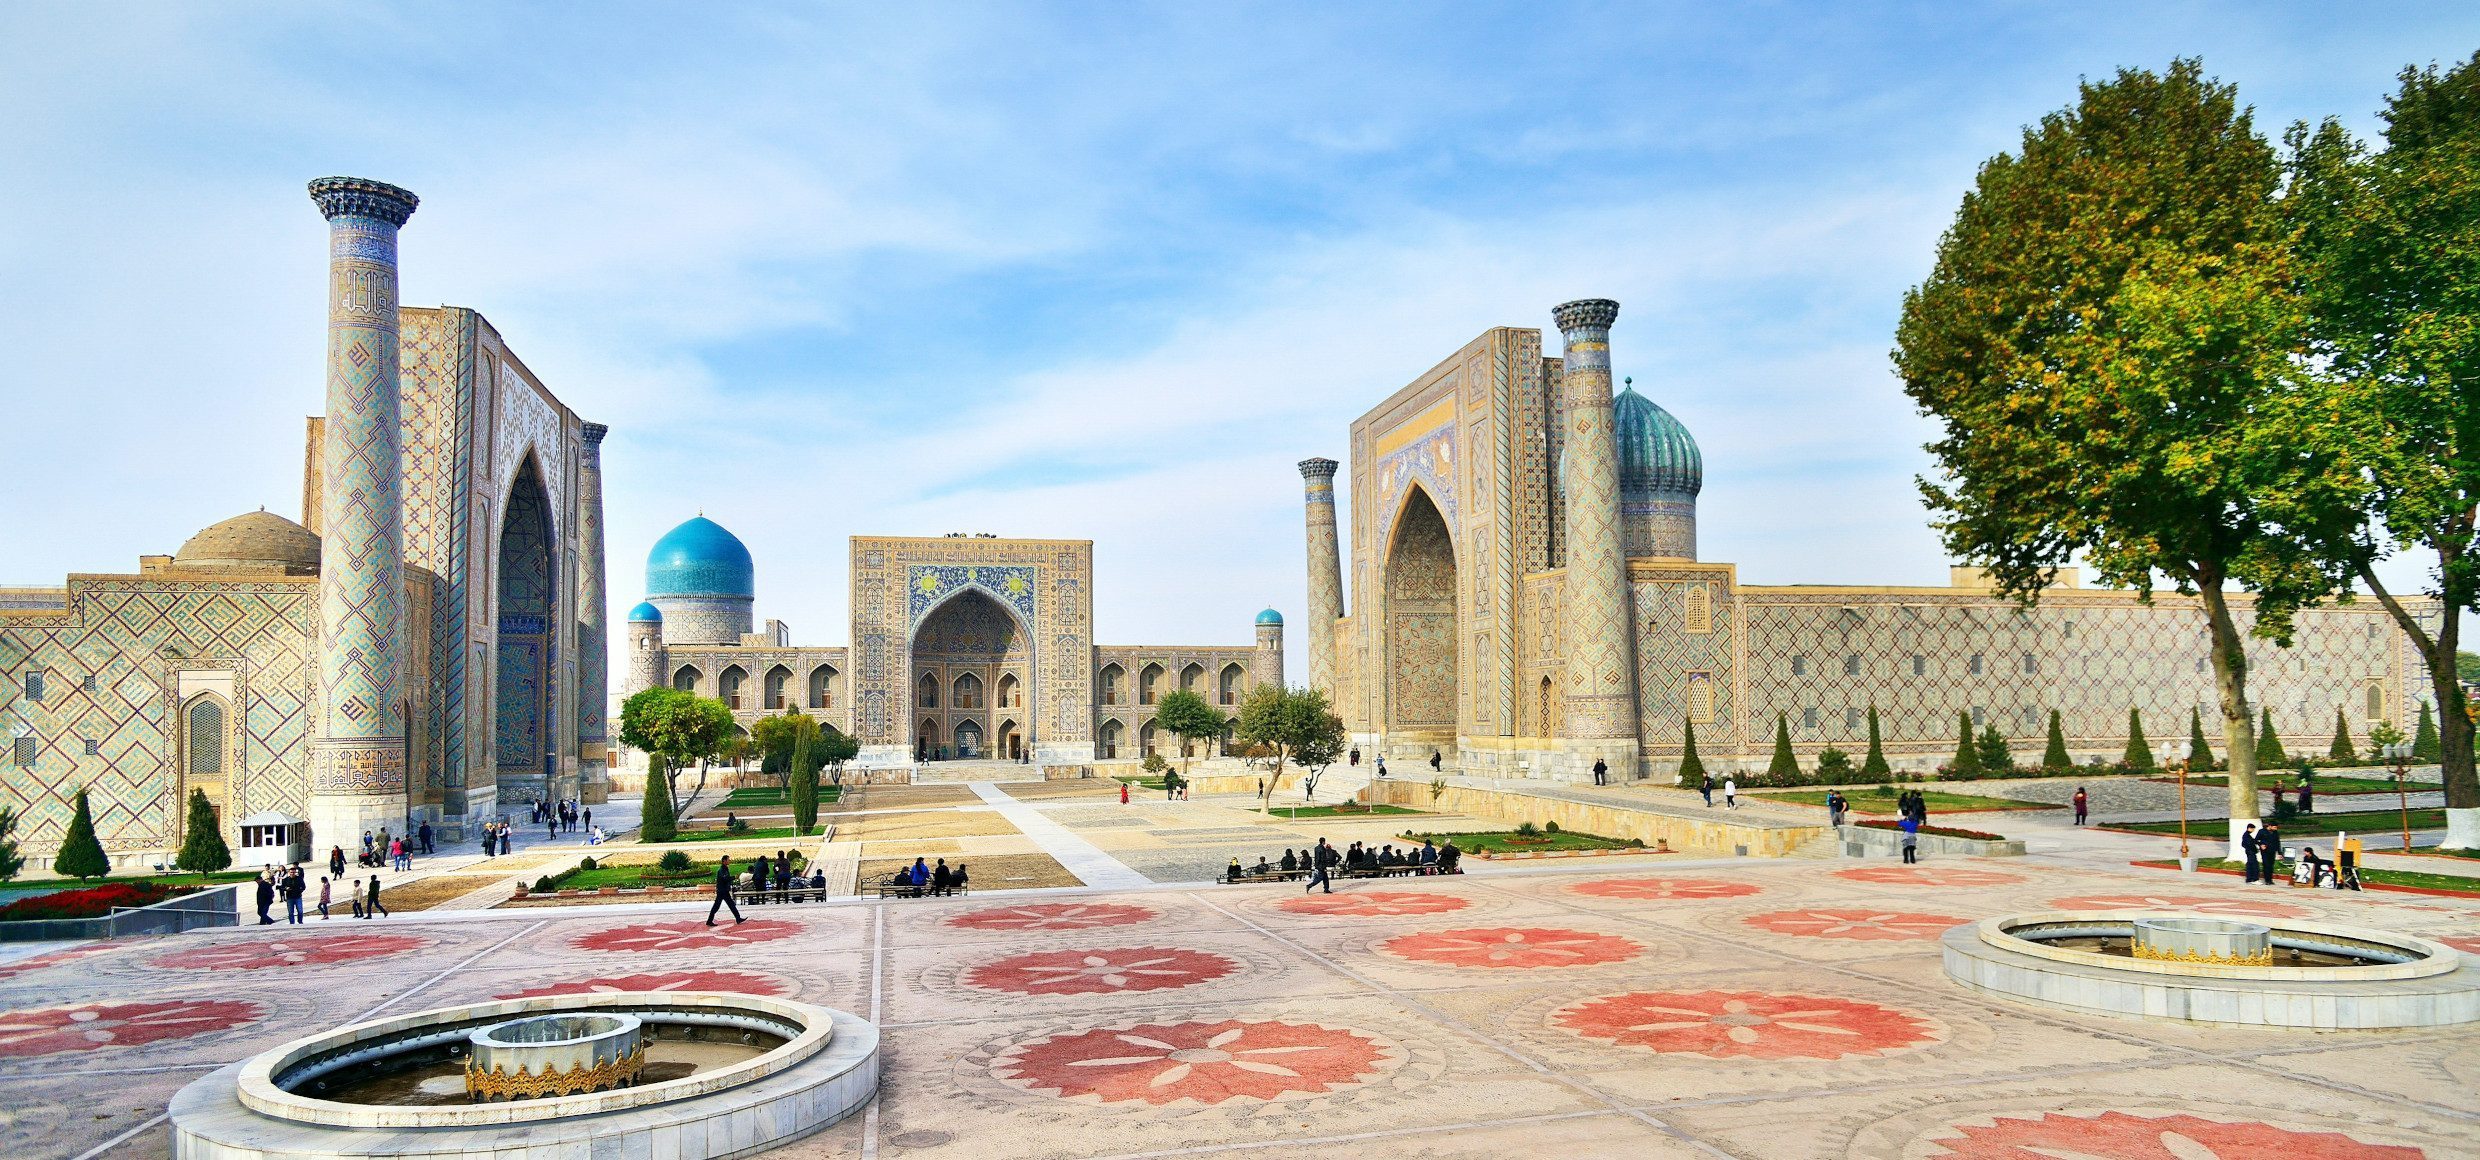 Registan-Platz-Samarkand-Lernidee-Erlebnisreisen-(c)phototravelua-stock.adobe.com-erweiterte-Lizenz_508-01